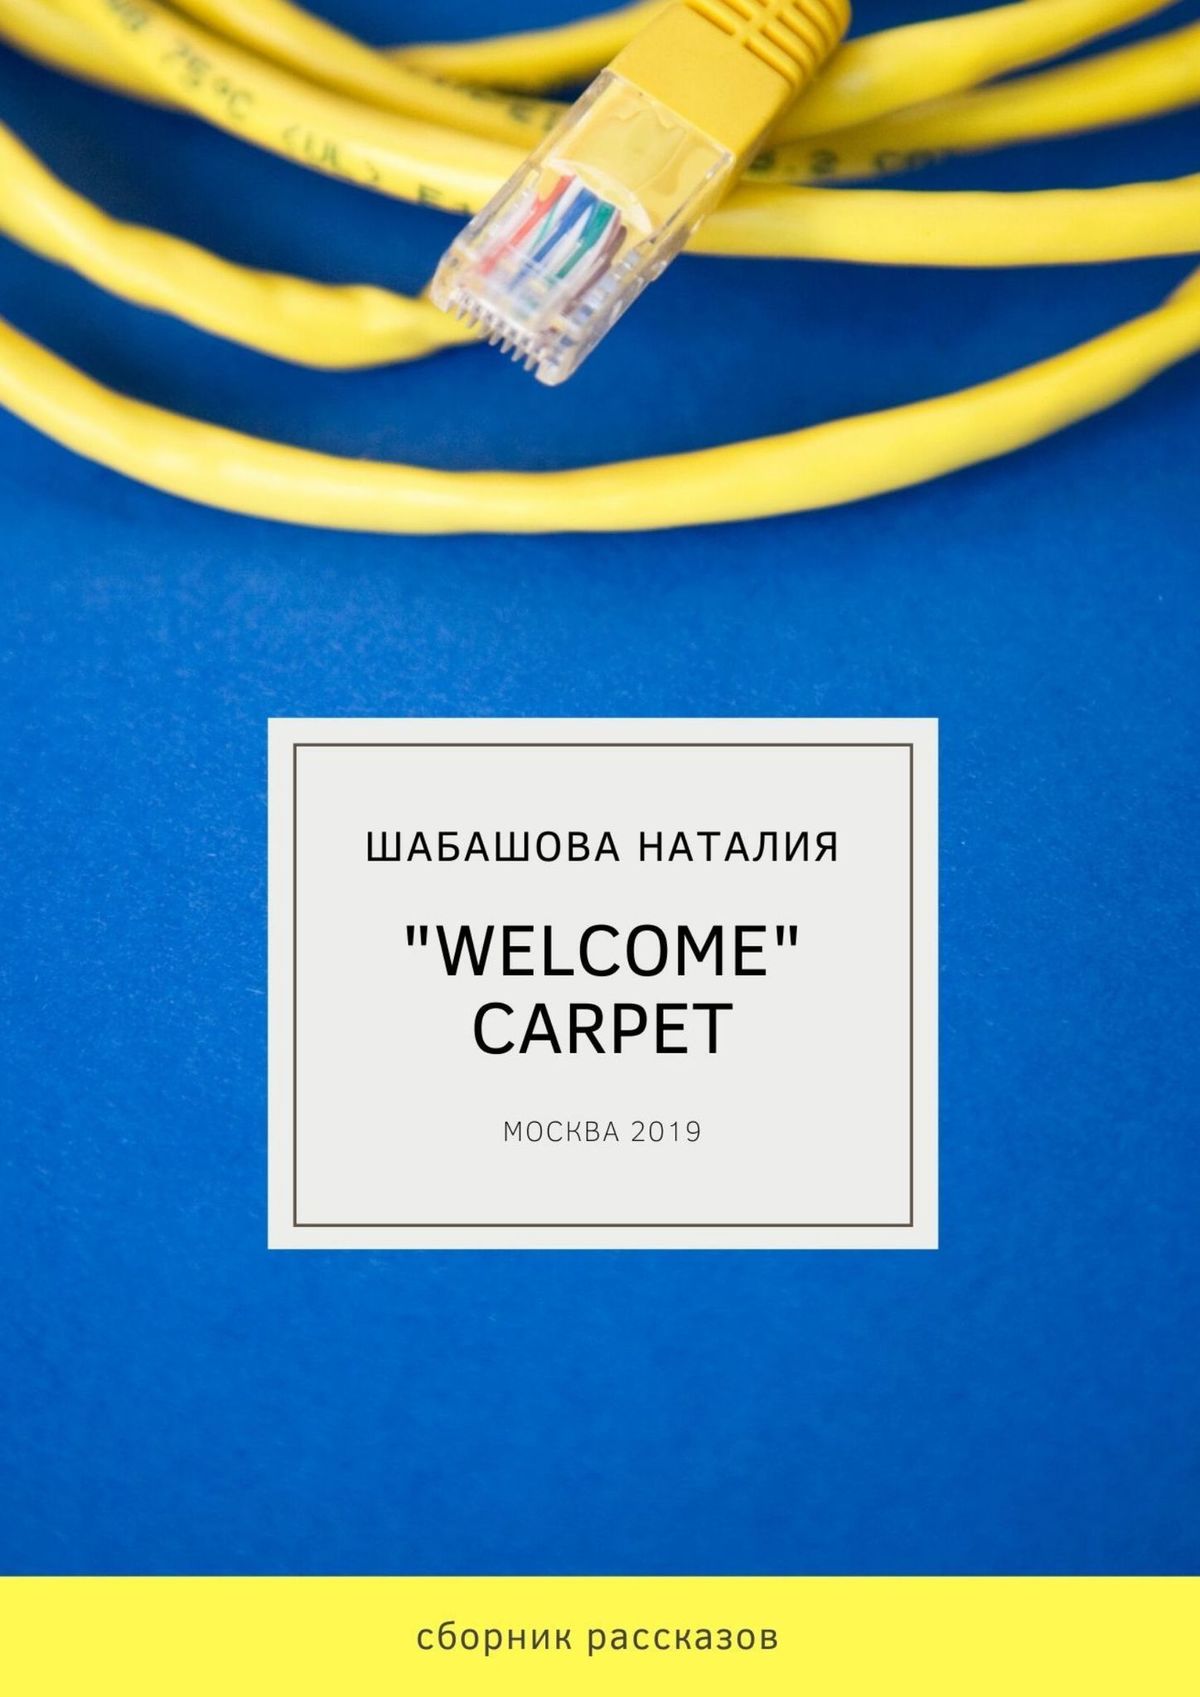 Книга «Welcome» carpet из серии , созданная Наталия Шабашова, может относится к жанру Современная русская литература, Публицистика: прочее. Стоимость электронной книги «Welcome» carpet с идентификатором 42571407 составляет 100.00 руб.